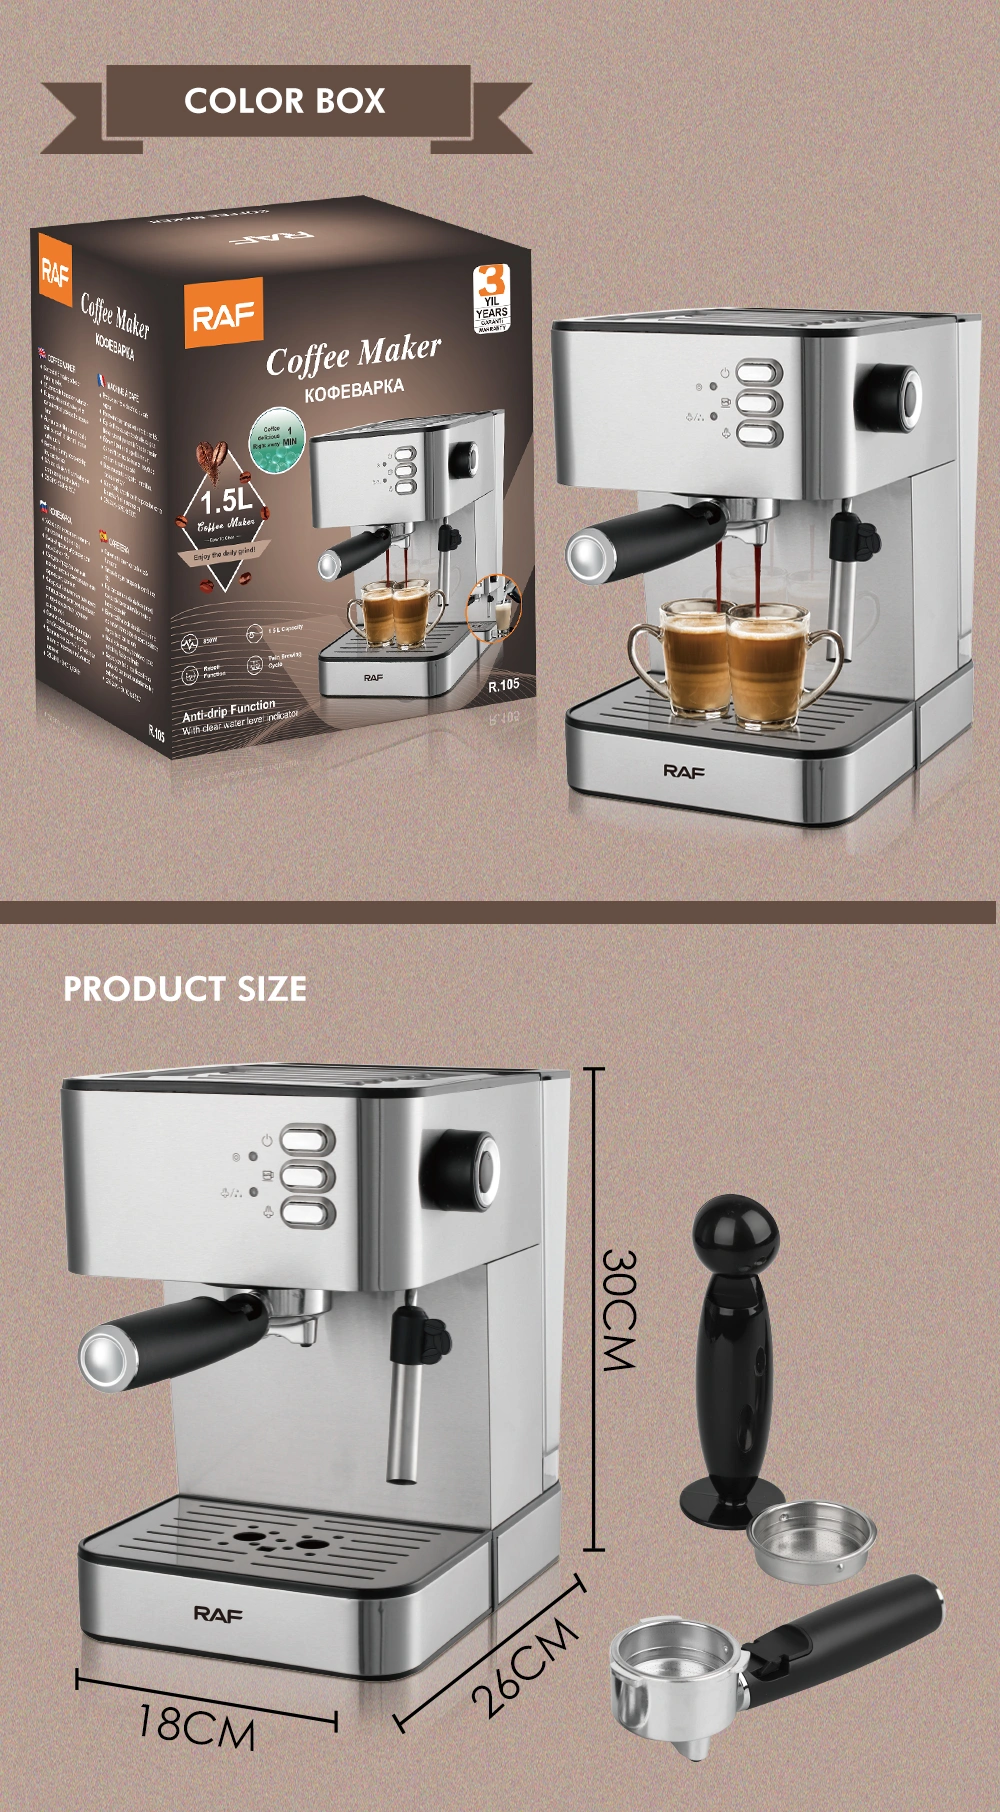 Coffee, Espresso & Tea – RAF Appliances